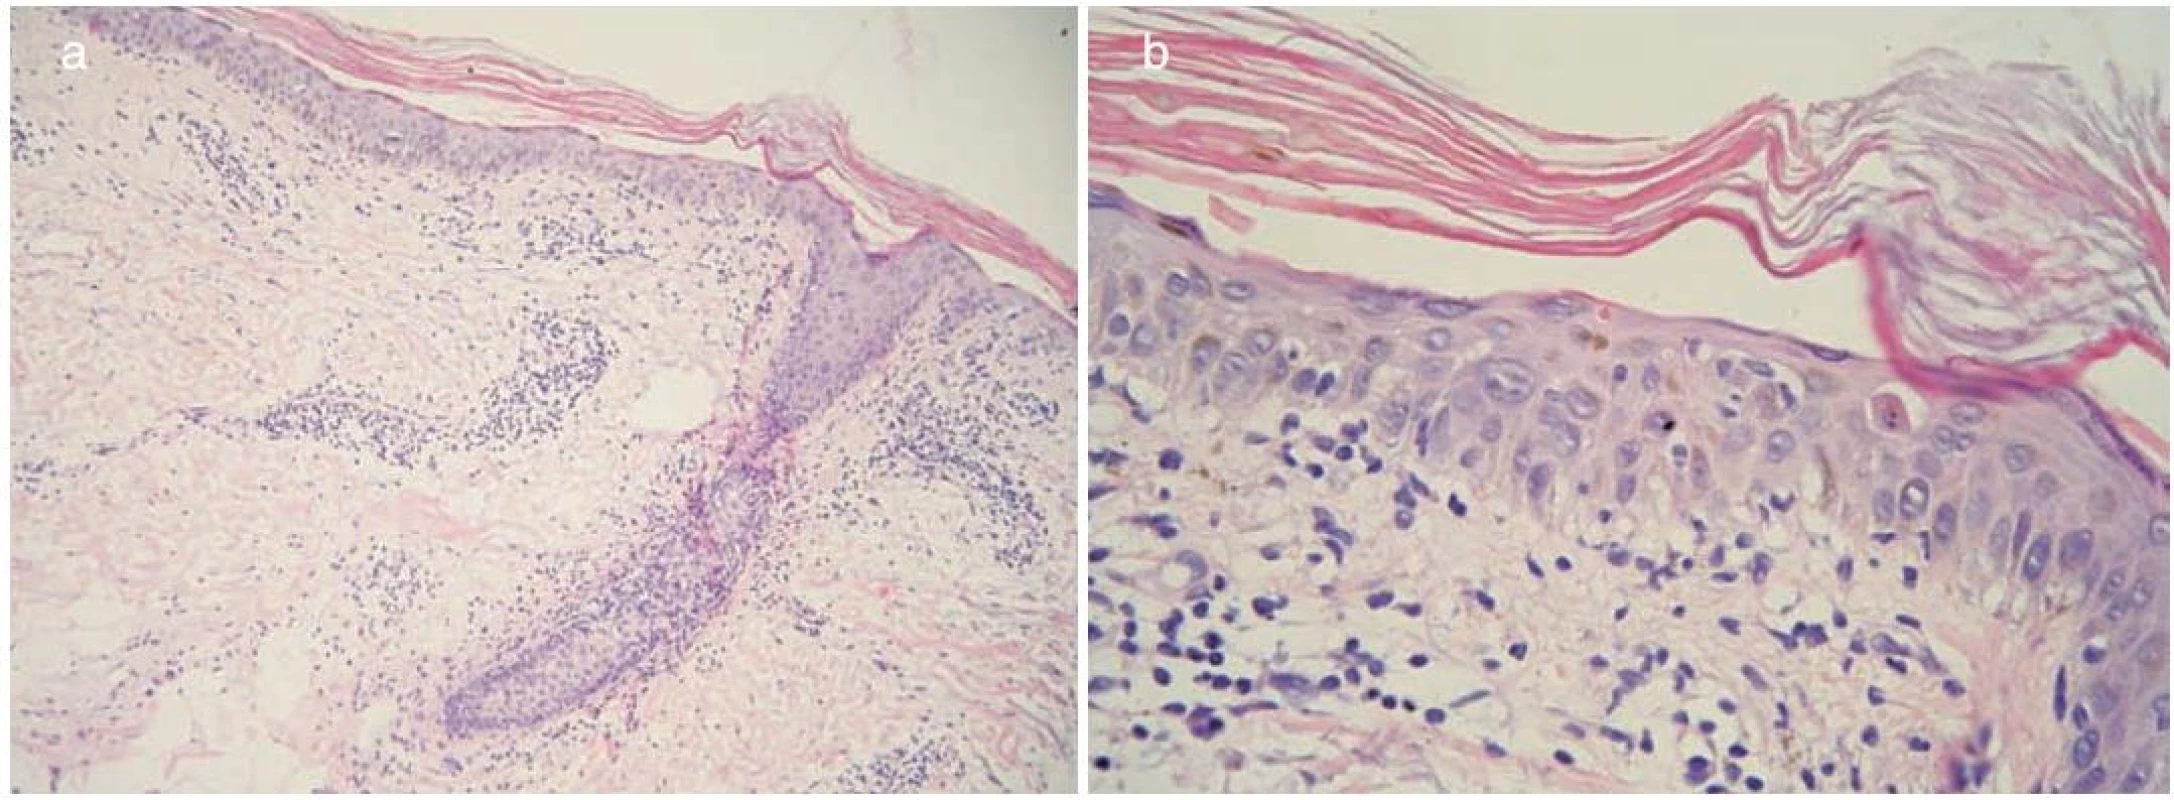 Histopatologický obraz a) a b)